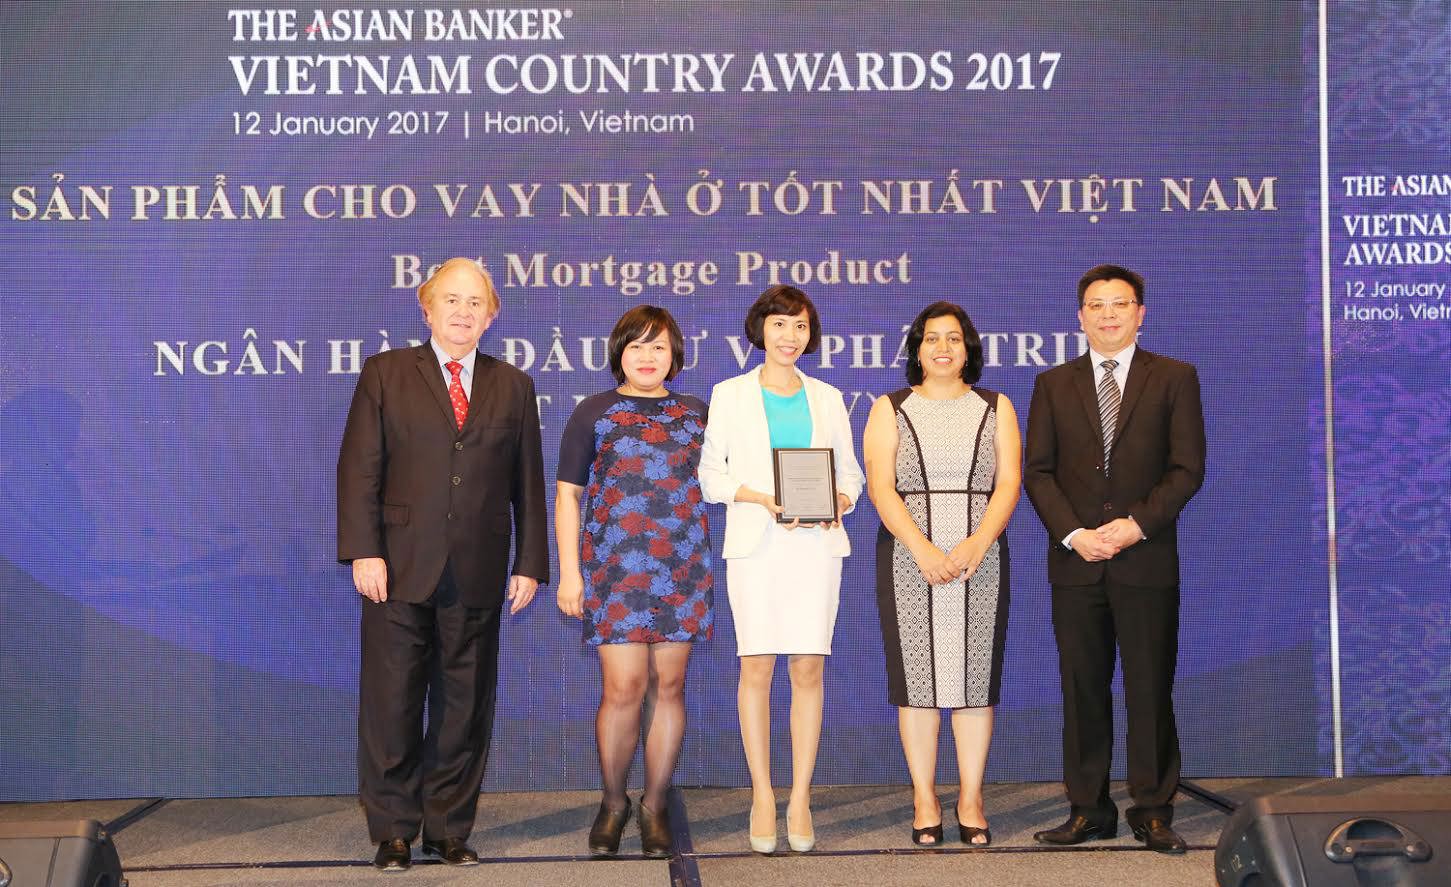 Đến nay BIDV trở thành ngân hàng tại Việt Nam lần thứ 3 liên tiếp là “Ngân hàng bán lẻ tốt nhất Việt Nam” (2015, 2016 & 2017). Nguồn: bidv.com.vn